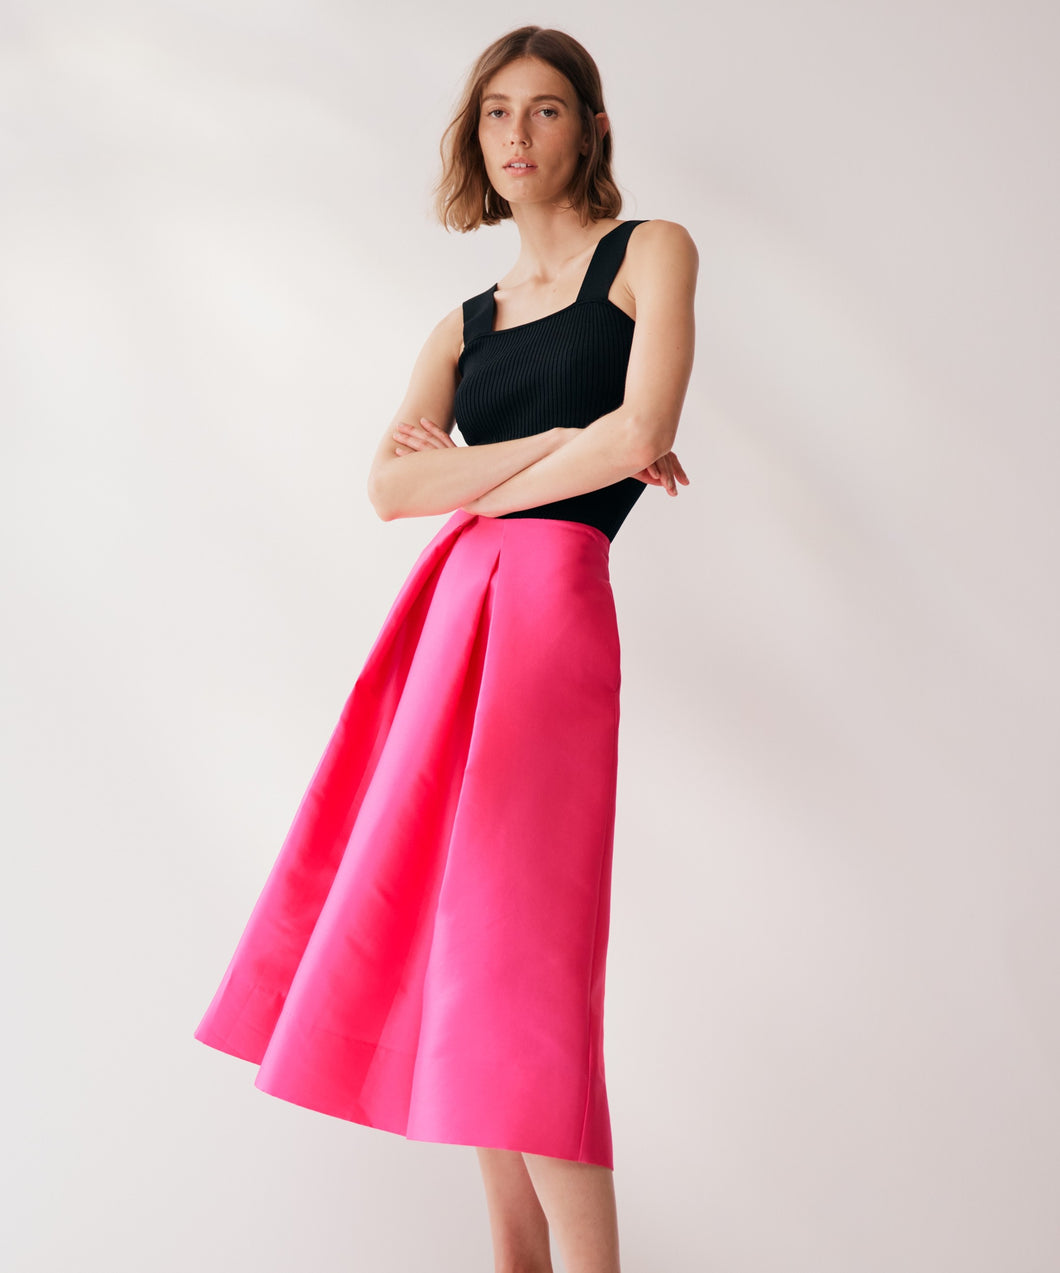 PERNILLE Skirt Pink | Morrison